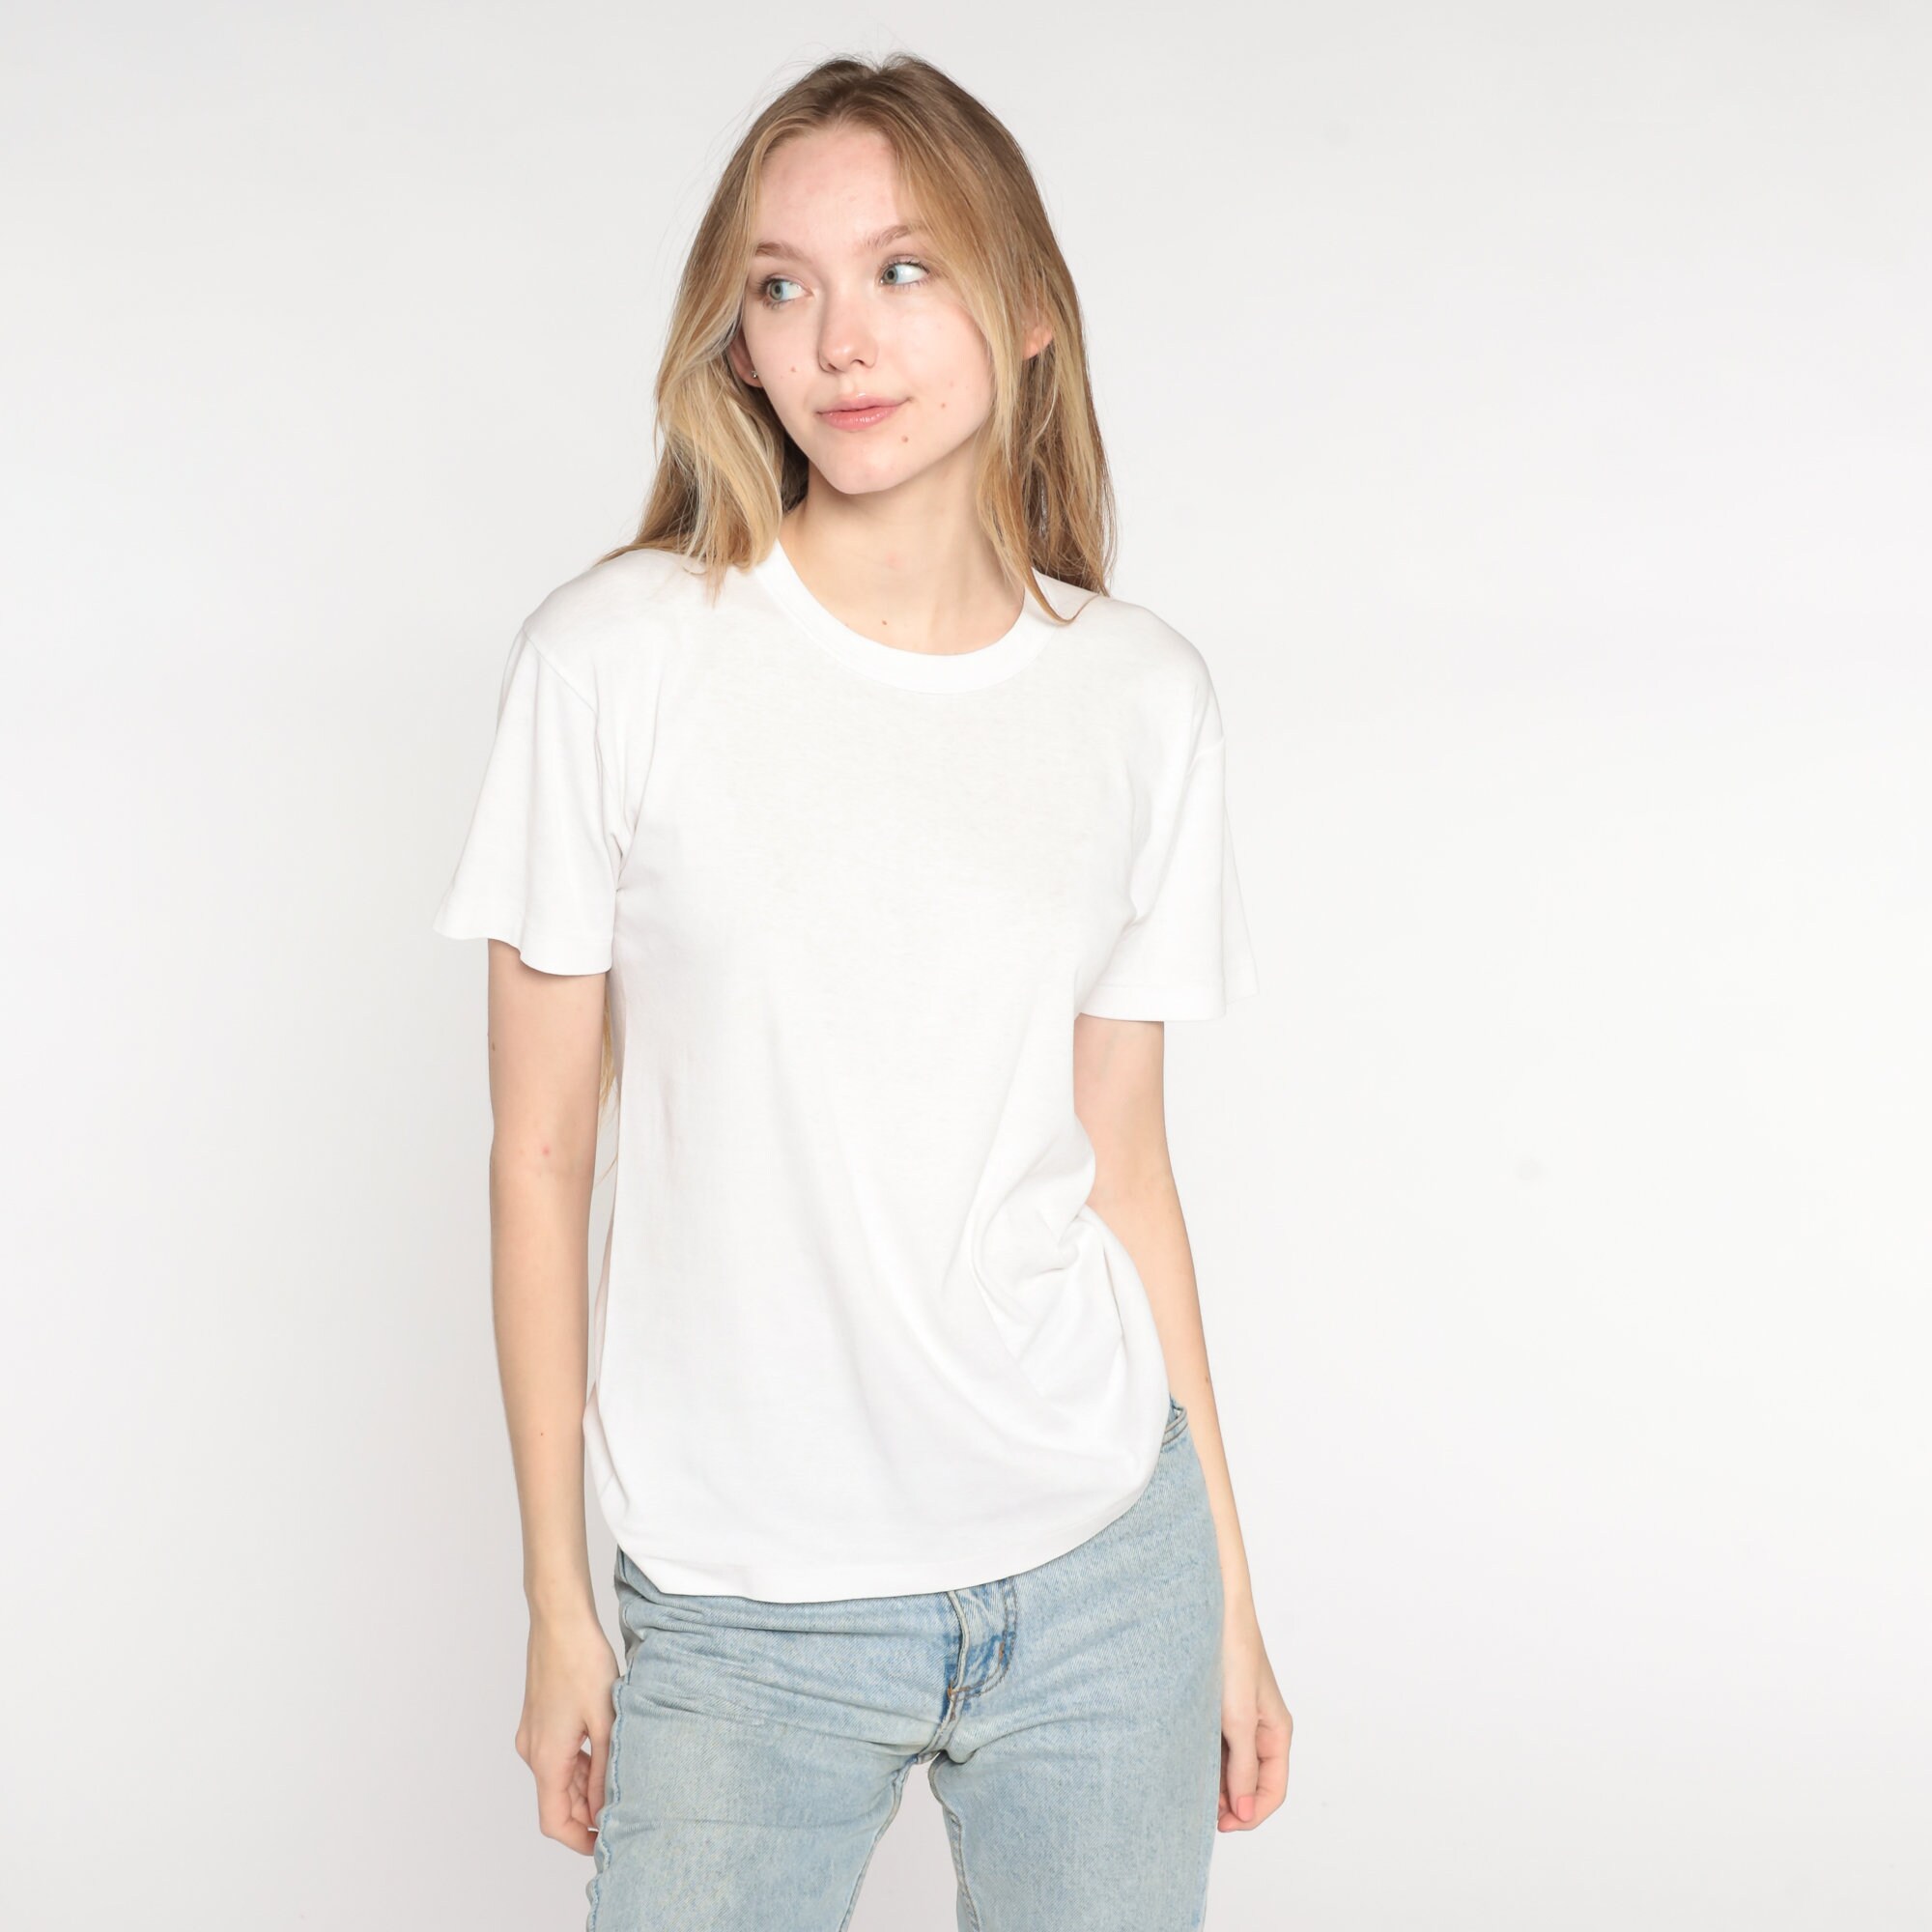 Plain White Shirt Vintage Single Stitch Shirt 90s T Shirt Basic ...